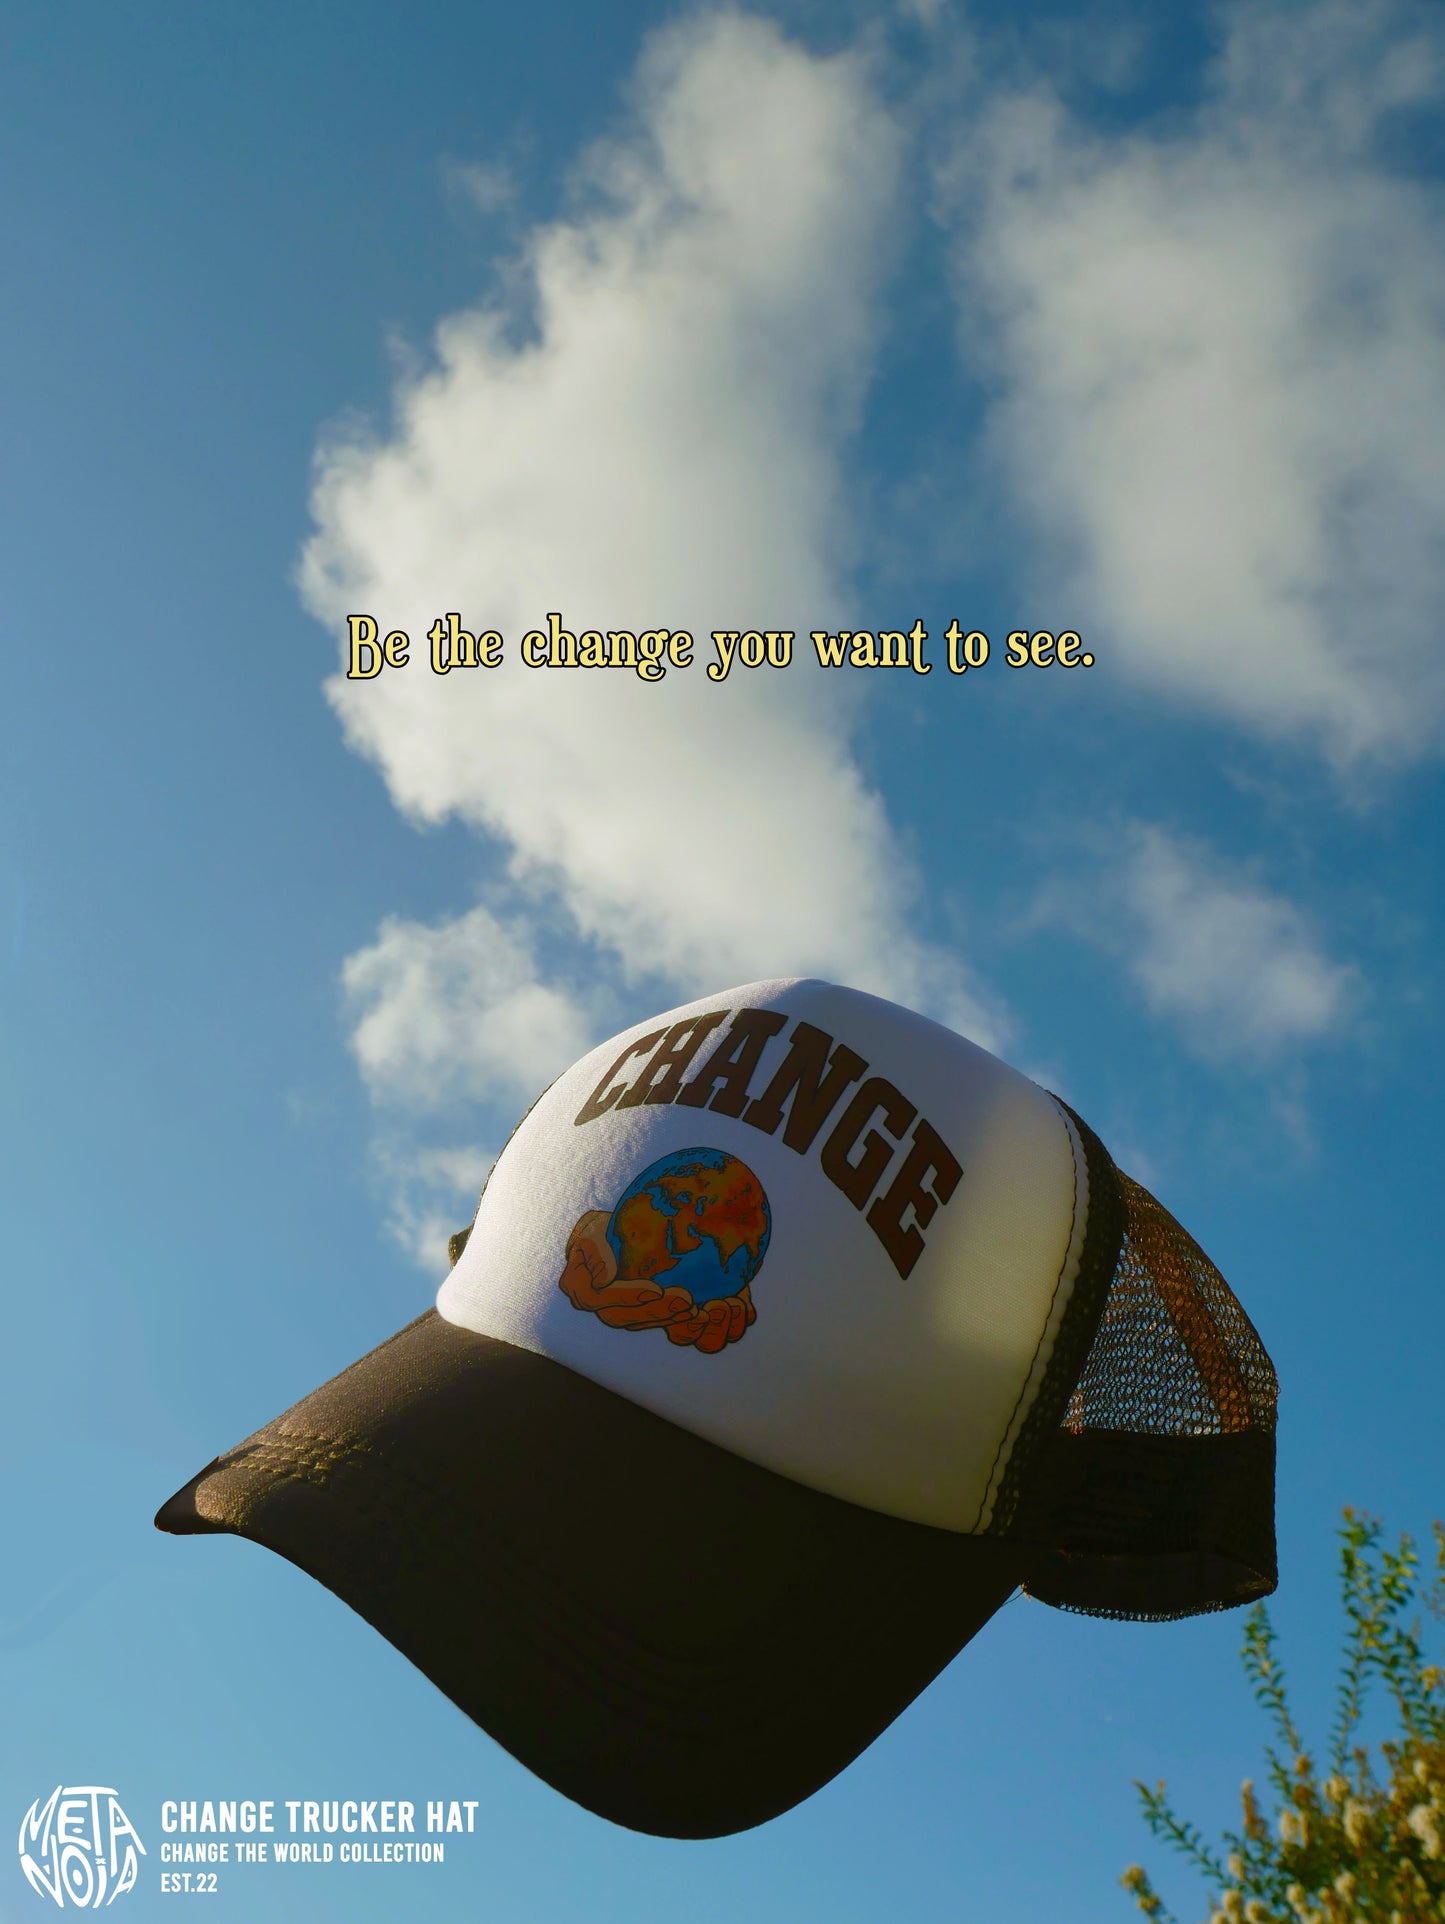 Change the World Trucker Hat